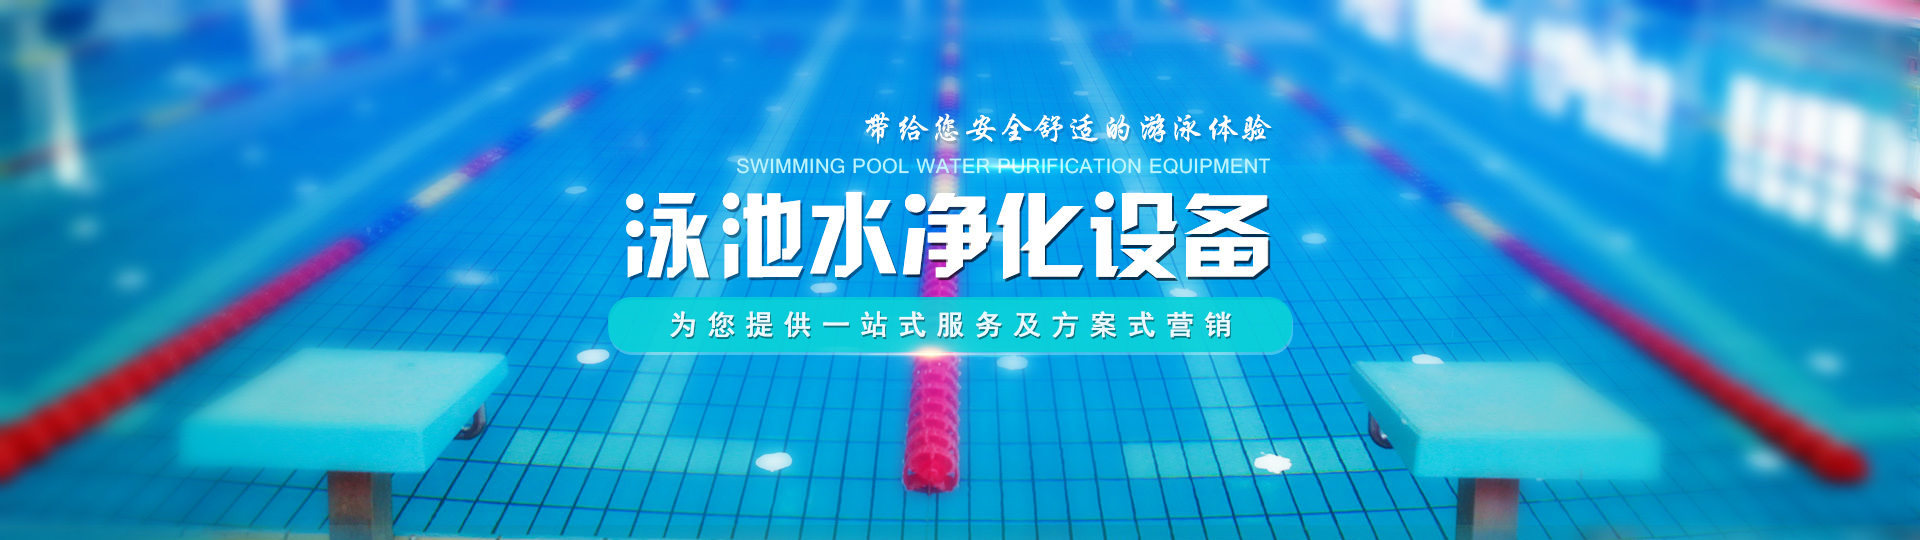 郑州泳洁水处理设备有限公司